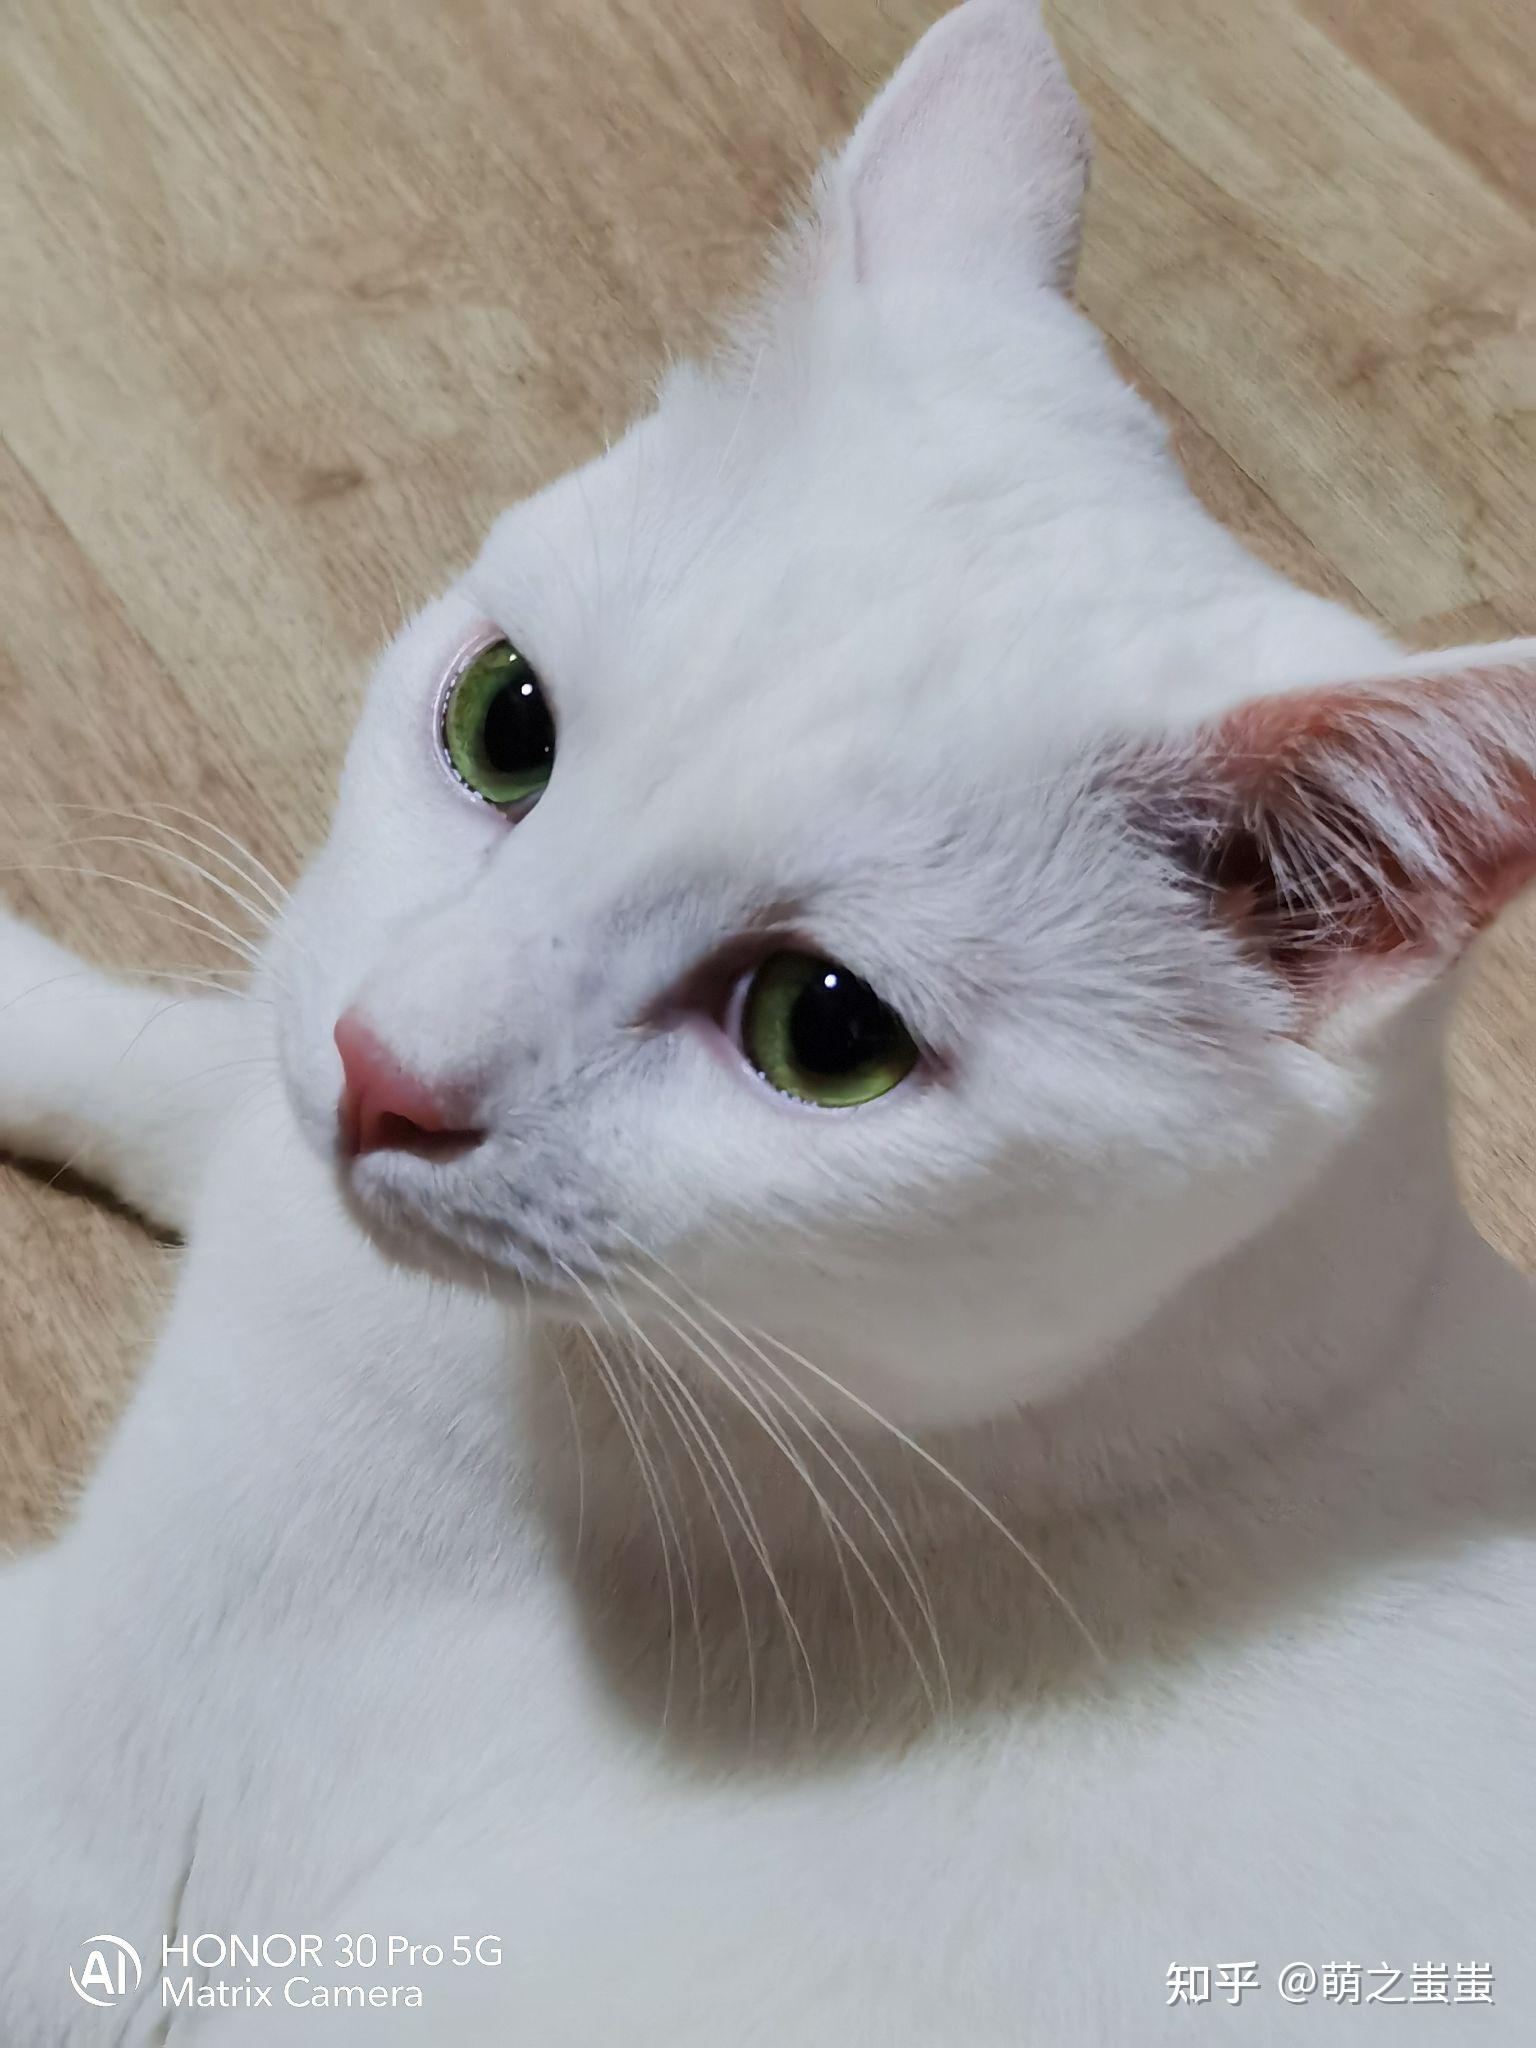 绿眼白猫是什么品种? 